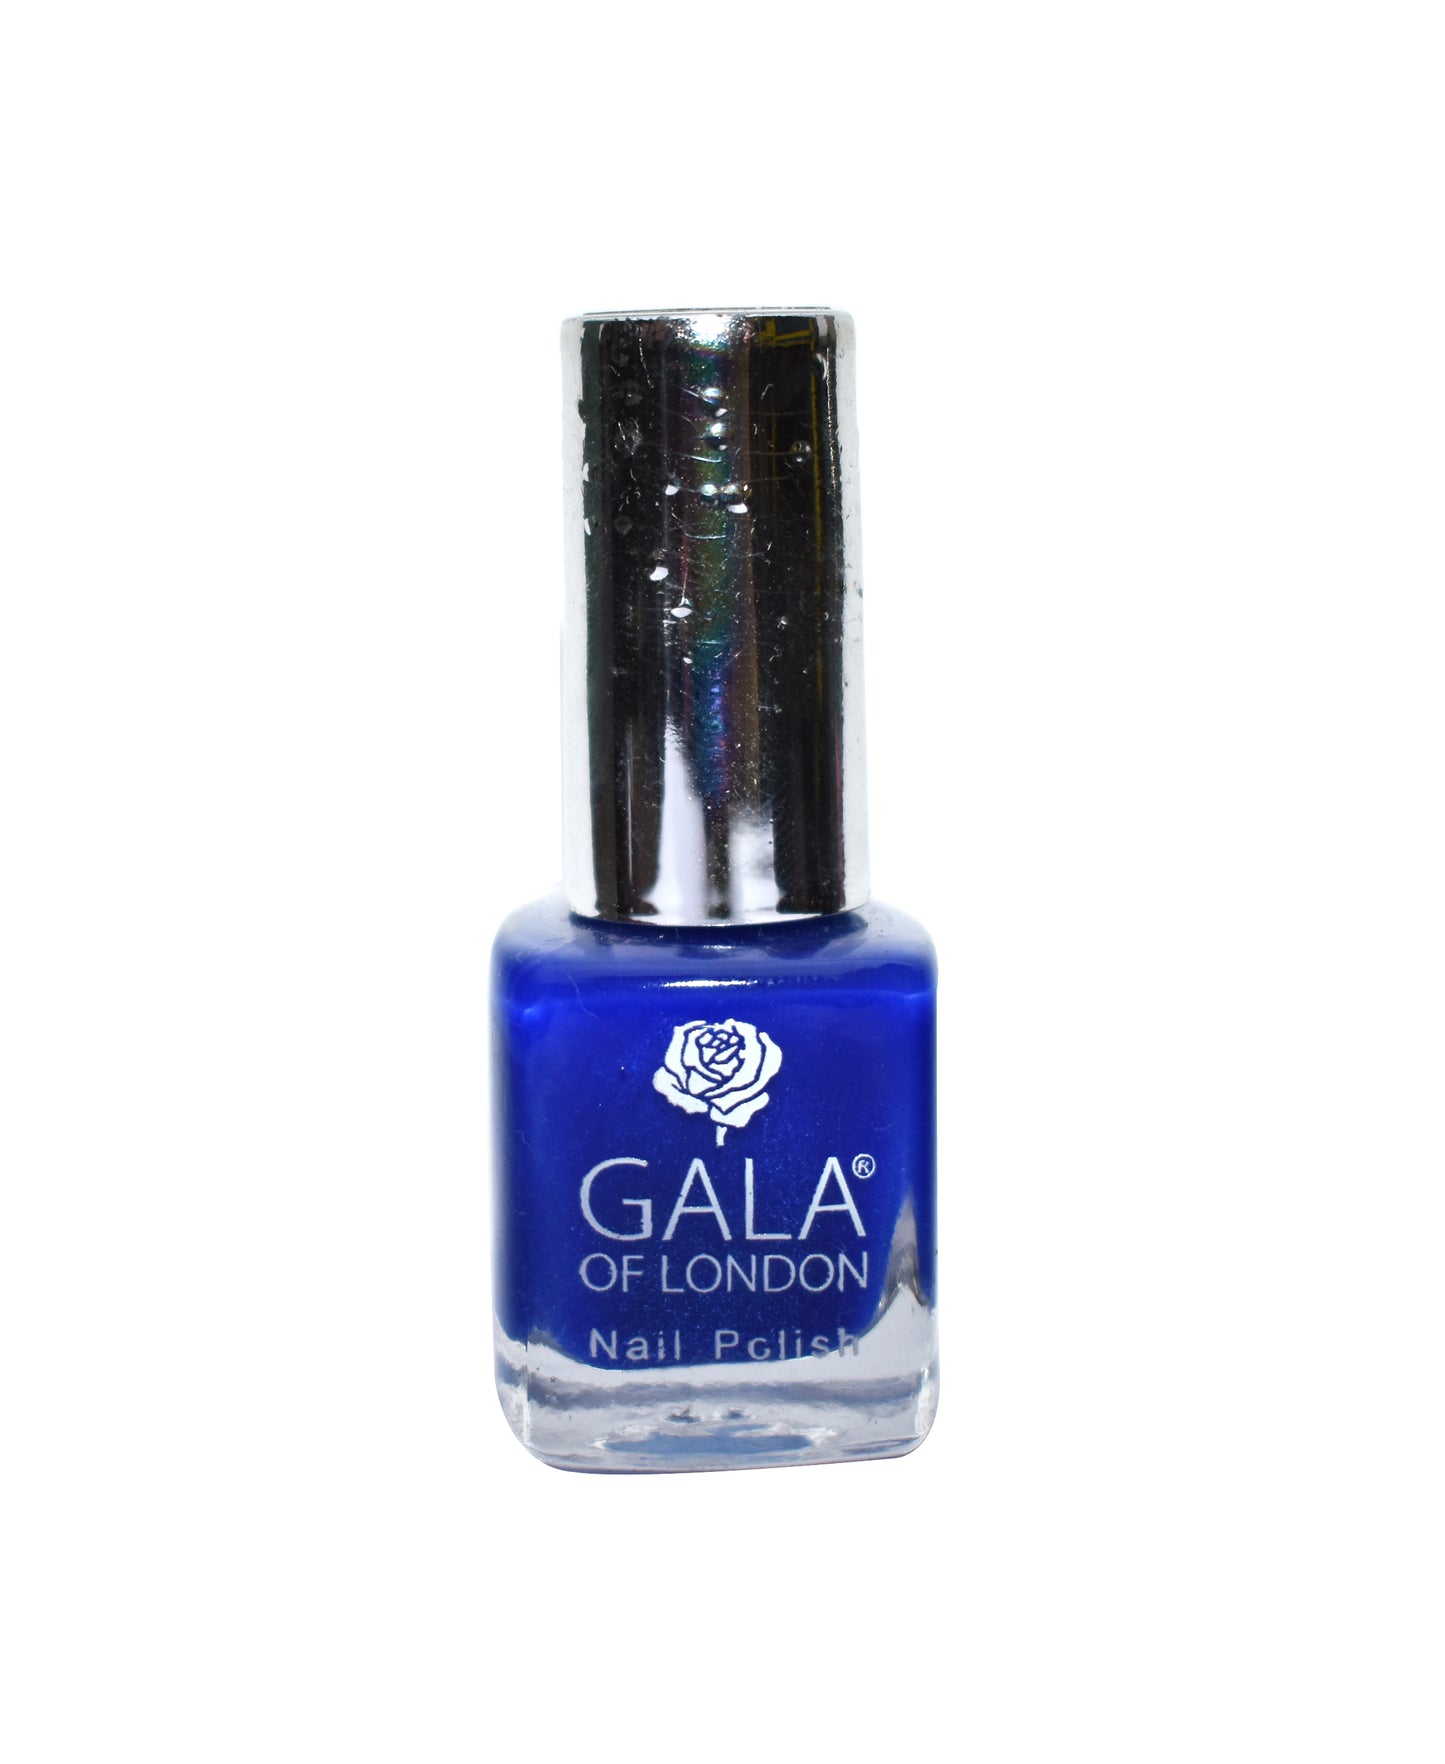 Gala of London Bridal Nail Polish - Glossy Blue BR17